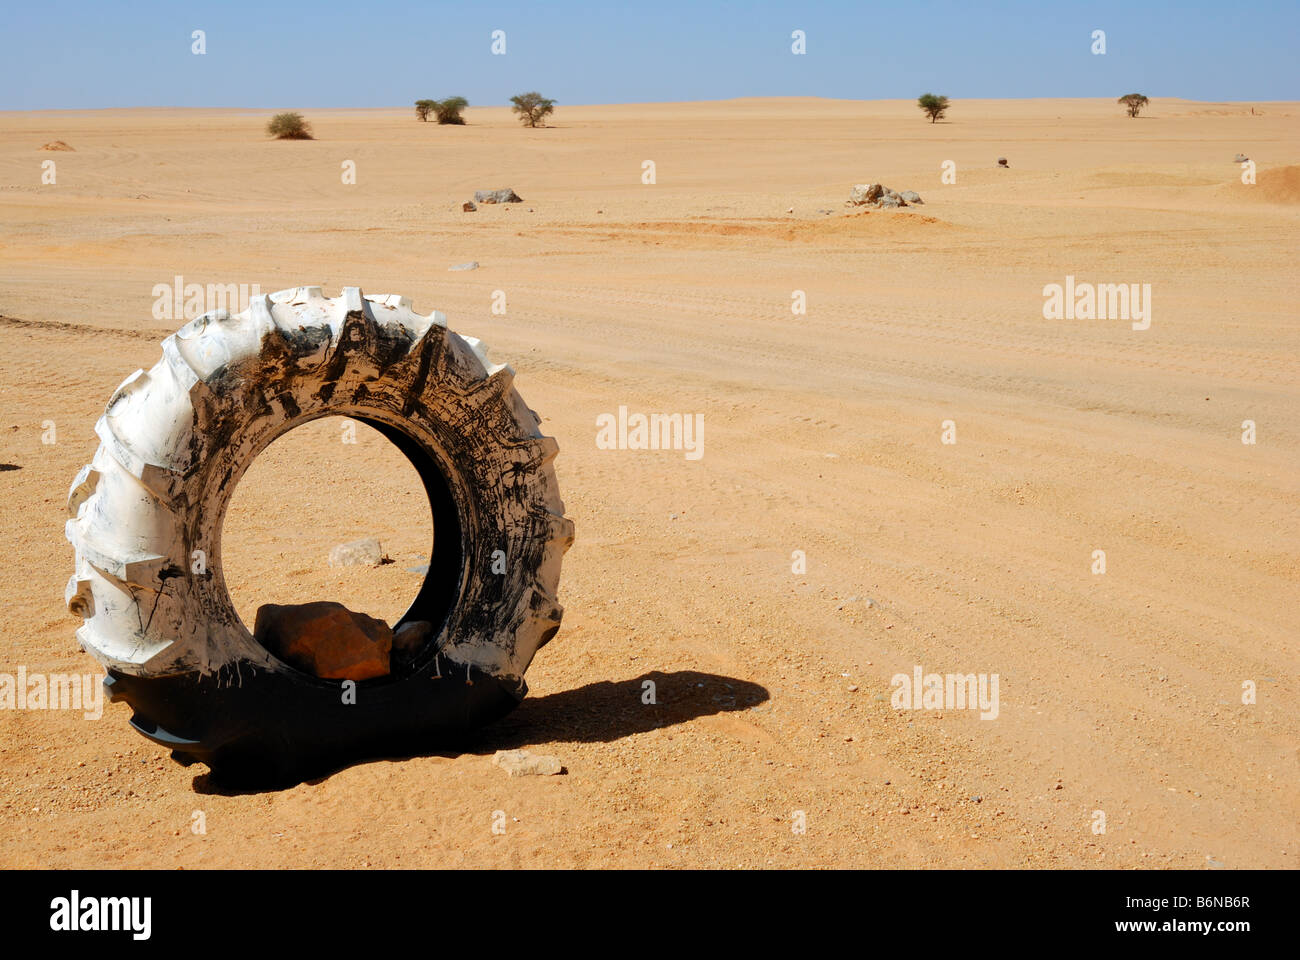 Truck wheel in desert Stock Photo